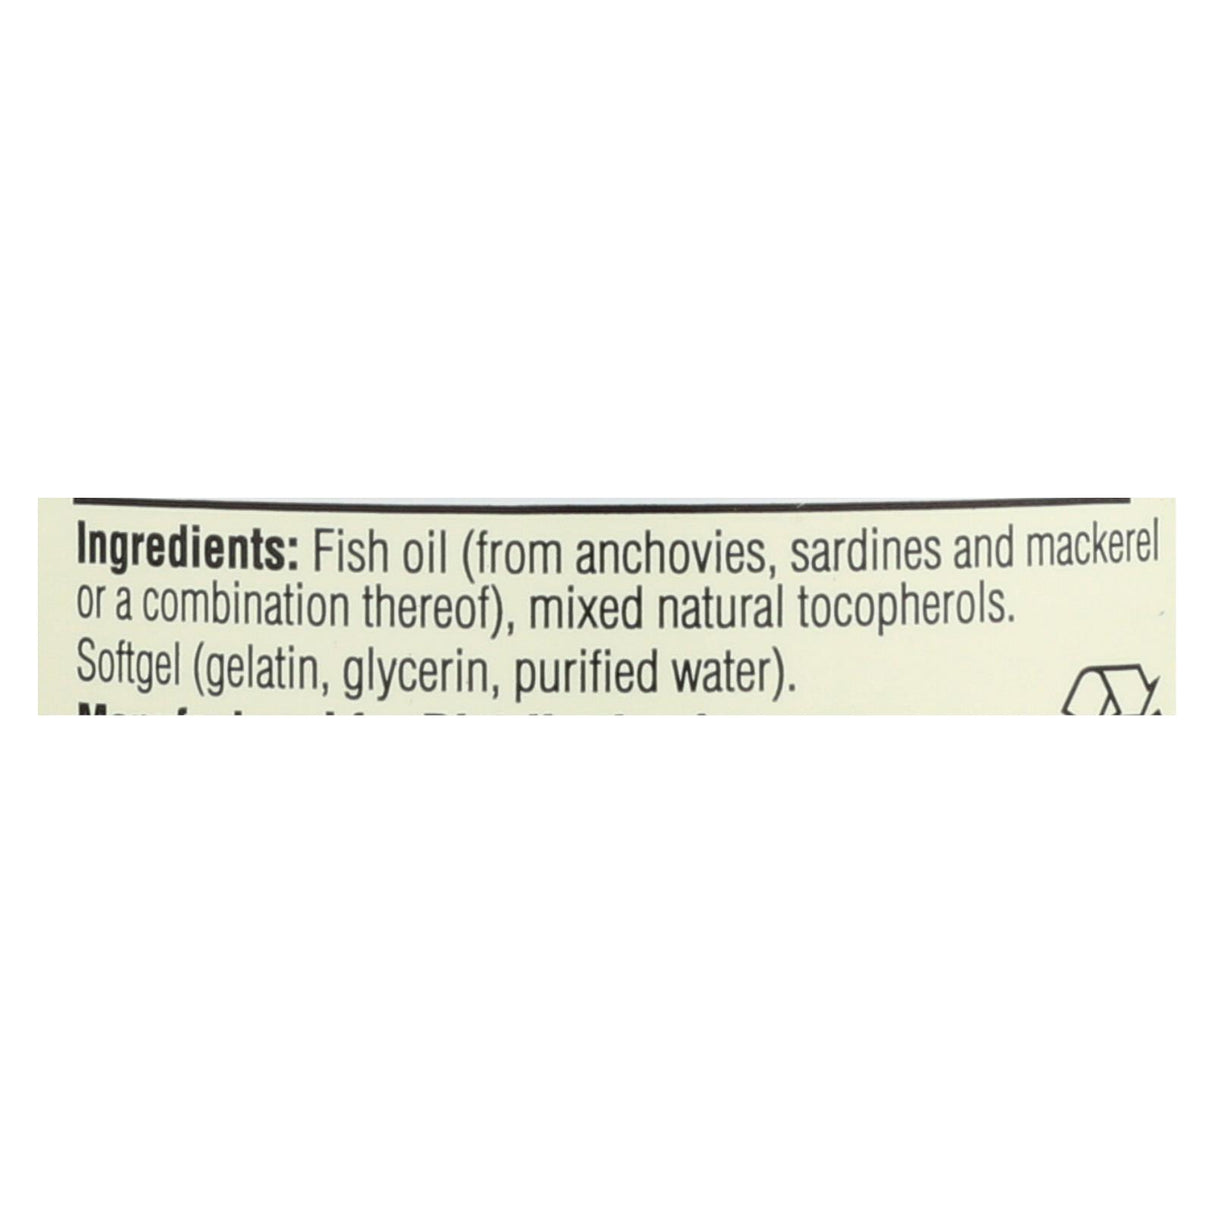 Spectrum Essentials Omega-3 Fish Oil Dietary Supplement  - 1 Each - 100 Cap